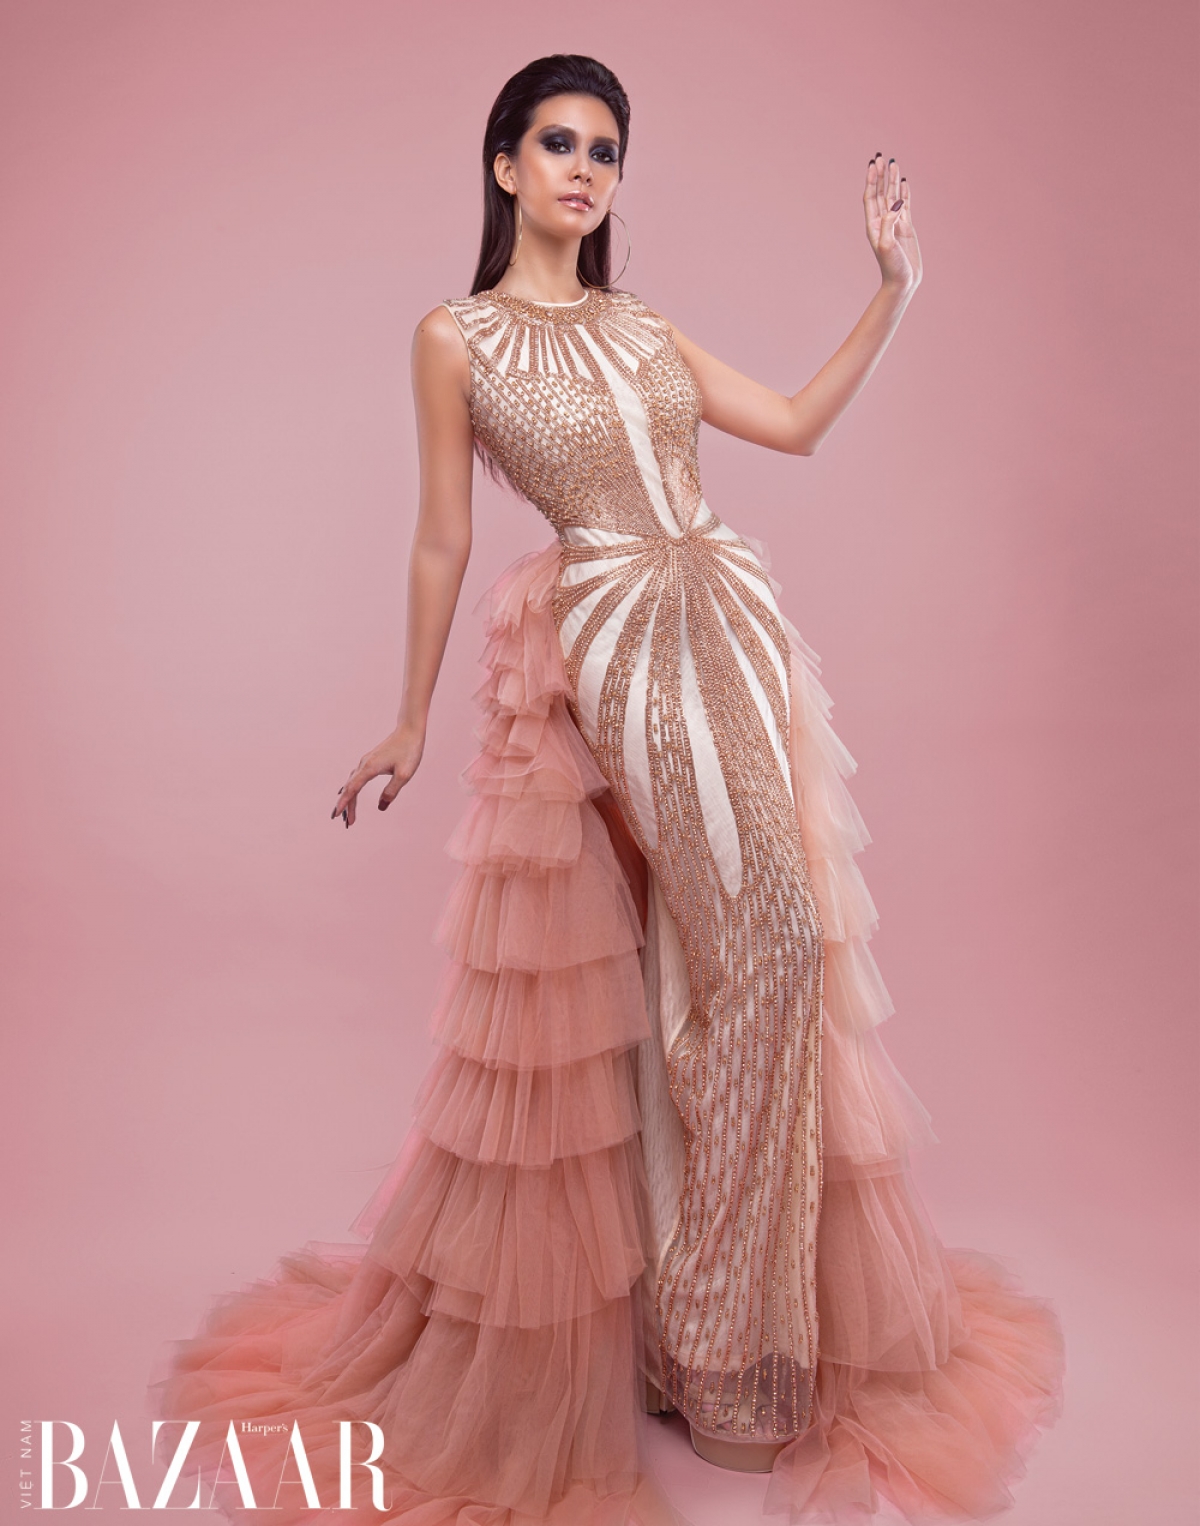 Tiểu Vy, Võ Hoàng Yến tái xuất sàn diễn cùng Hoa hậu Toàn cầu 2019 - Ảnh 4.